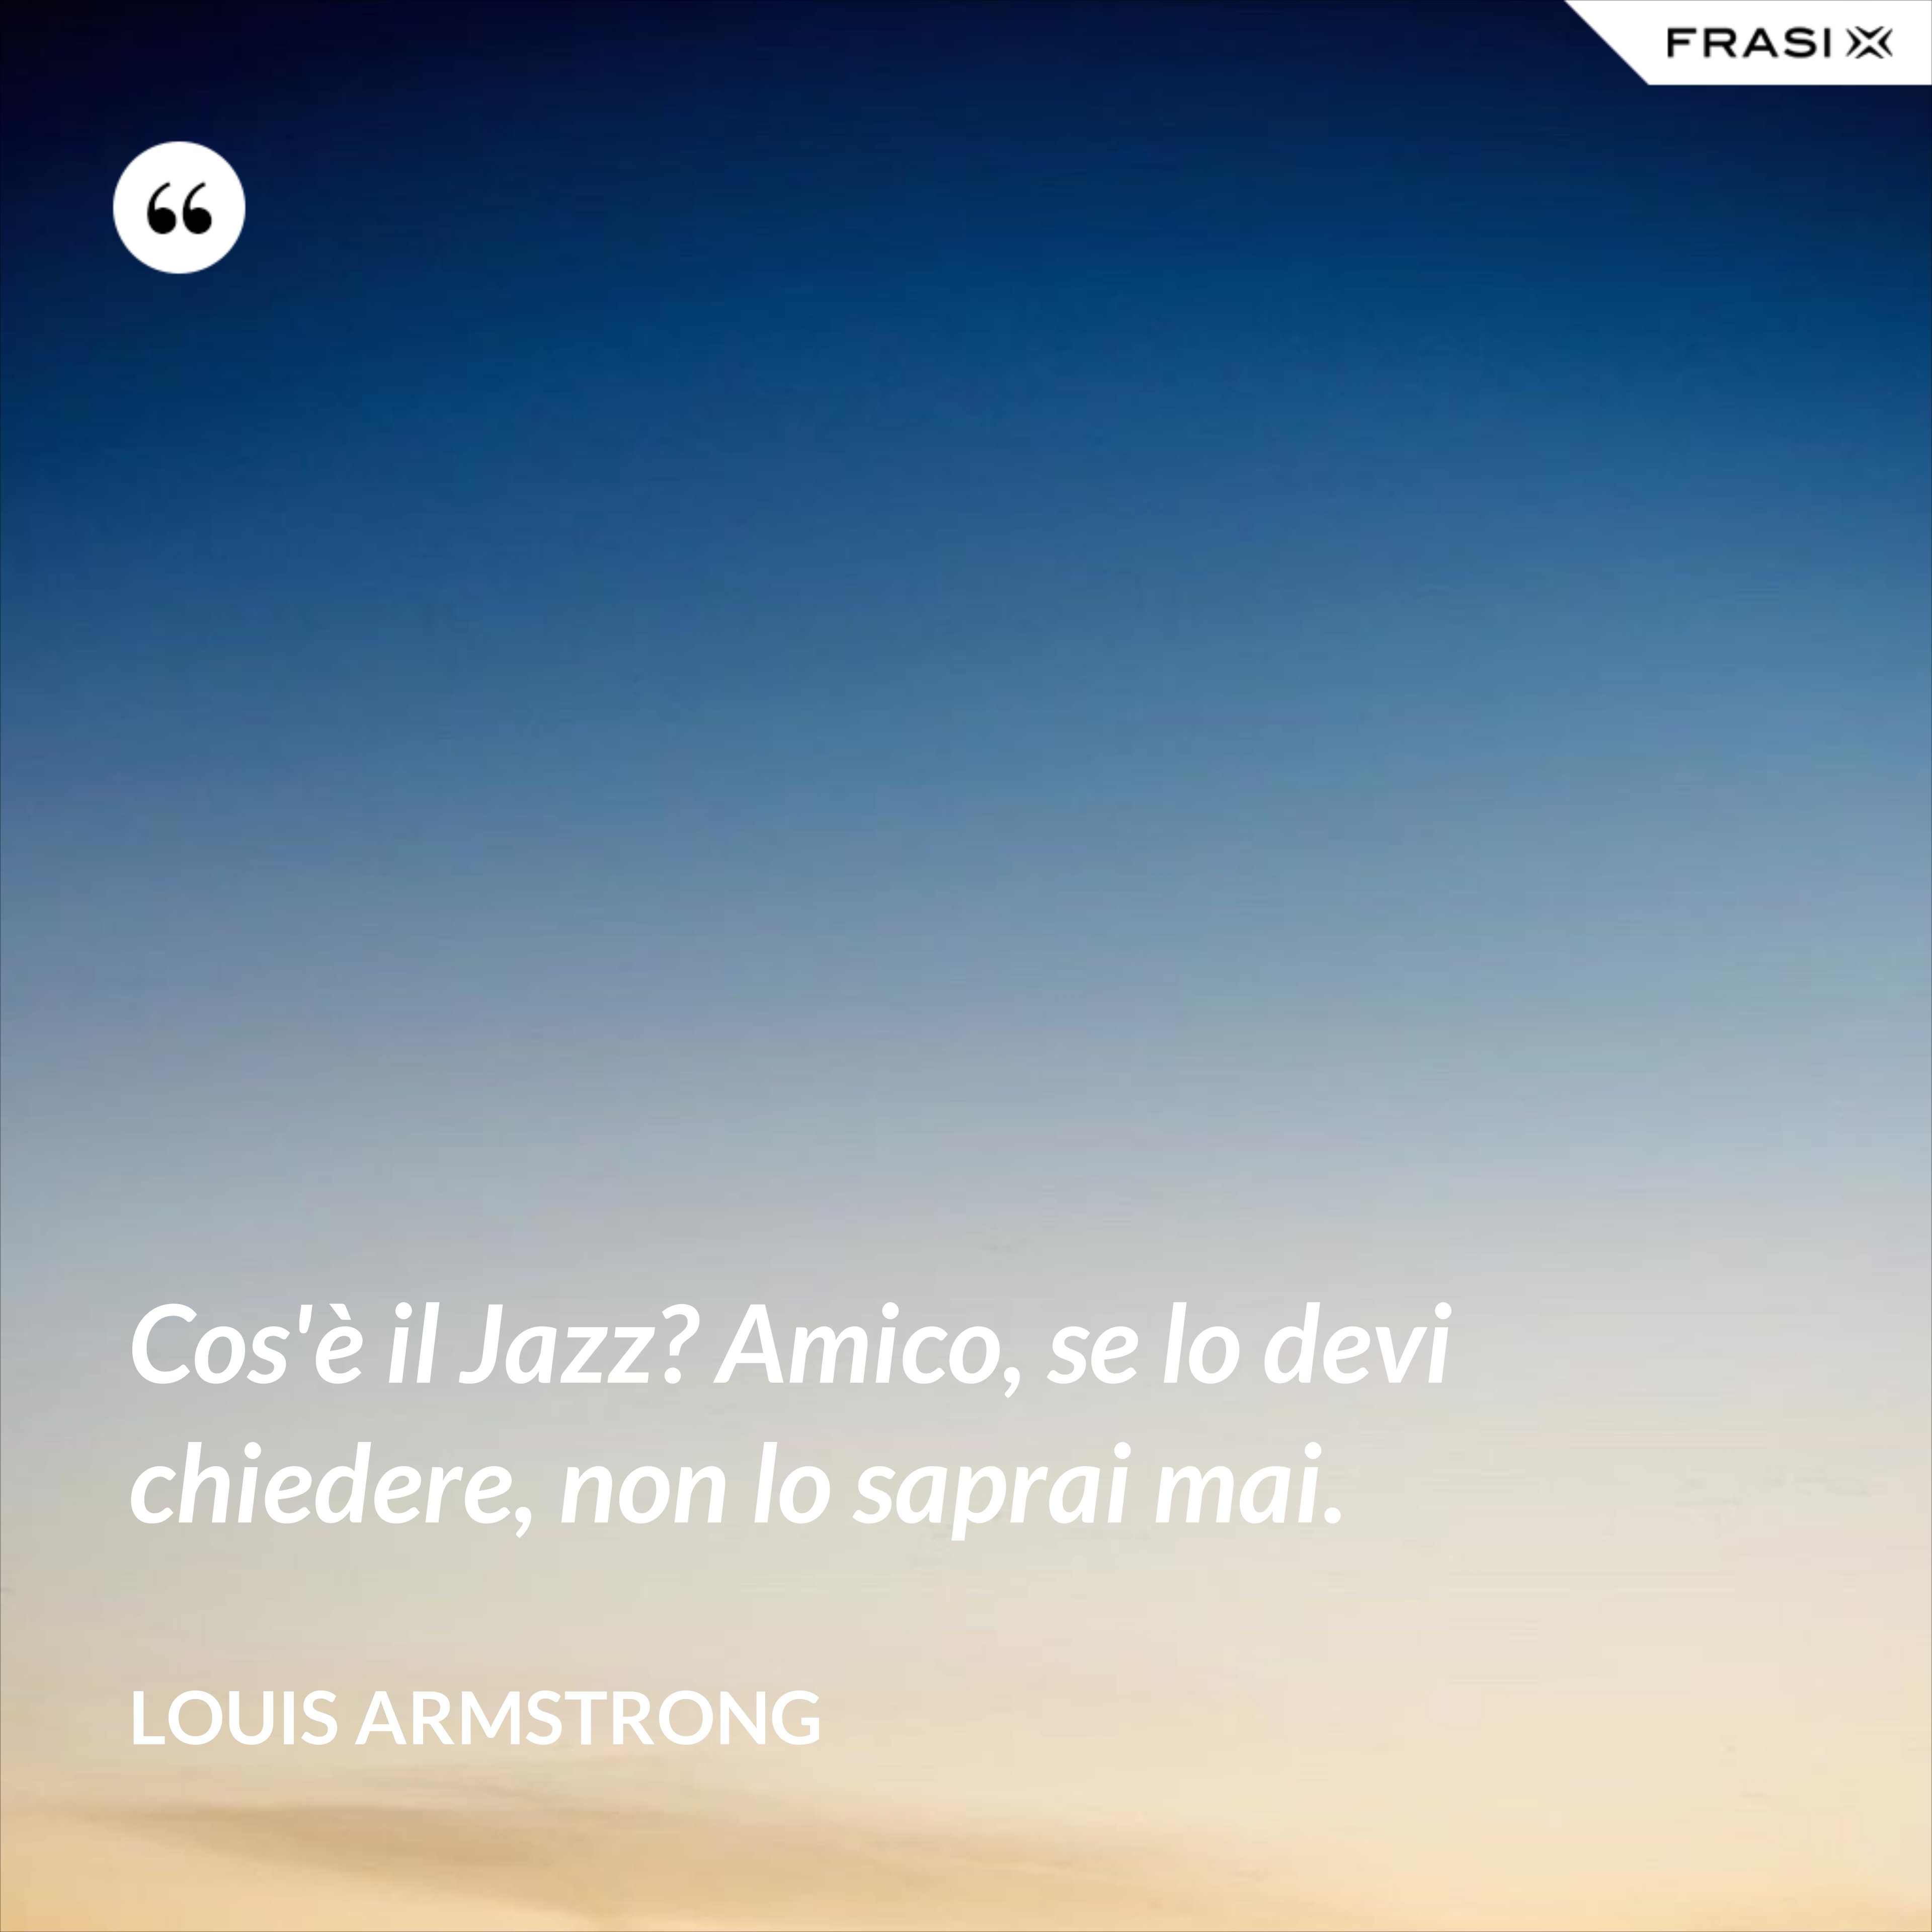 Cos'è il Jazz? Amico, se lo devi chiedere, non lo saprai mai. - Louis Armstrong